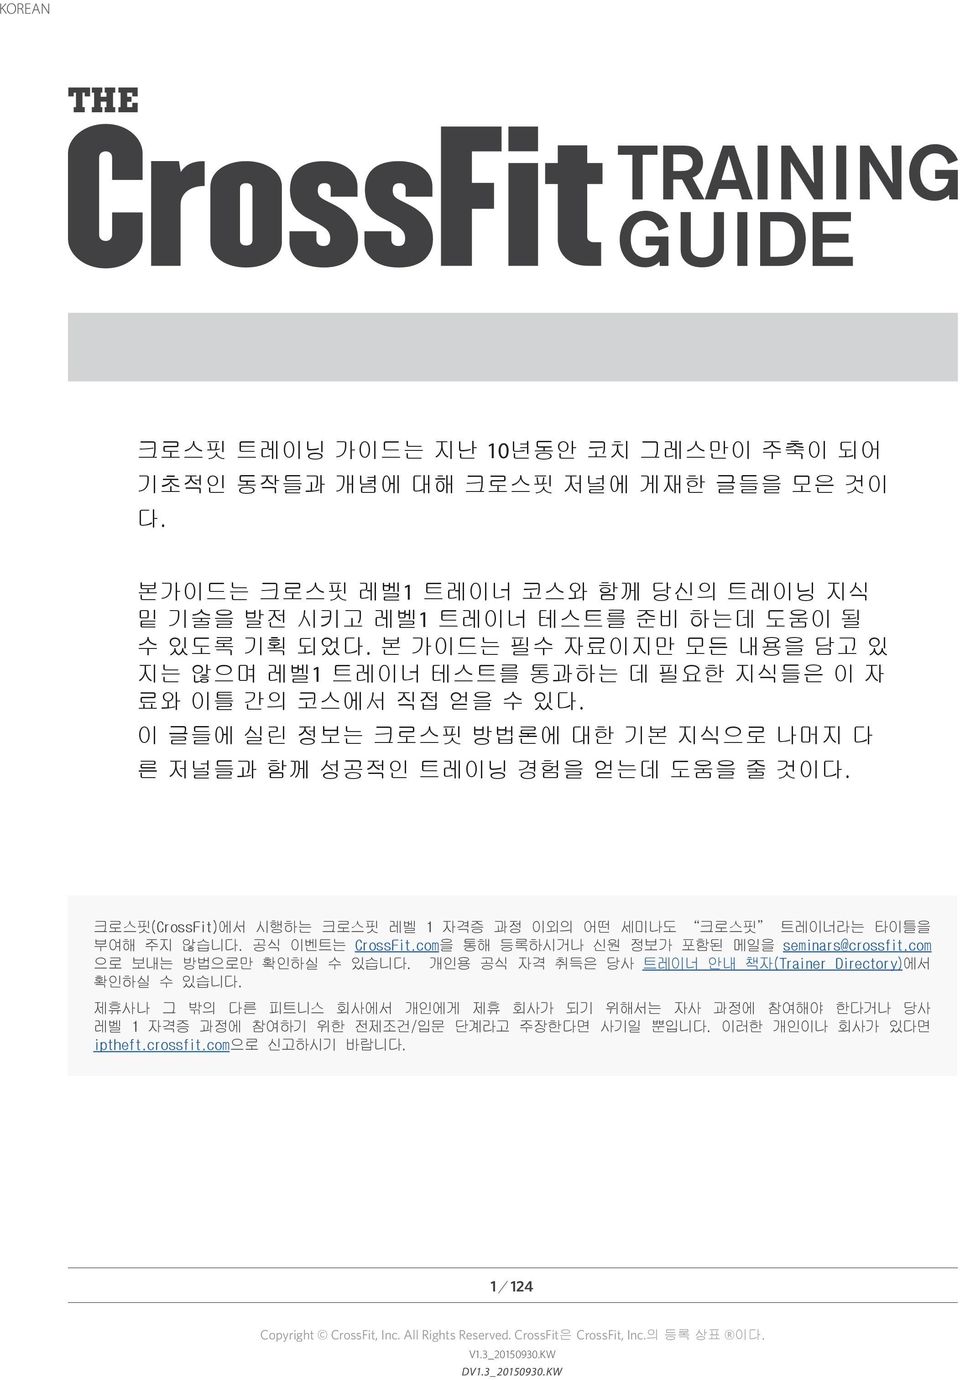 크로스핏(CrossFit)에서 시행하는 크로스핏 레벨 1 자격증 과정 이외의 어떤 세미나도 크로스핏 트레이너라는 타이틀을 부여해 주지 않습니다. 공식 이벤트는 CrossFit.com을 통해 등록하시거나 신원 정보가 포함된 메일을 seminars@crossfit.com 으로 보내는 방법으로만 확인하실 수 있습니다.